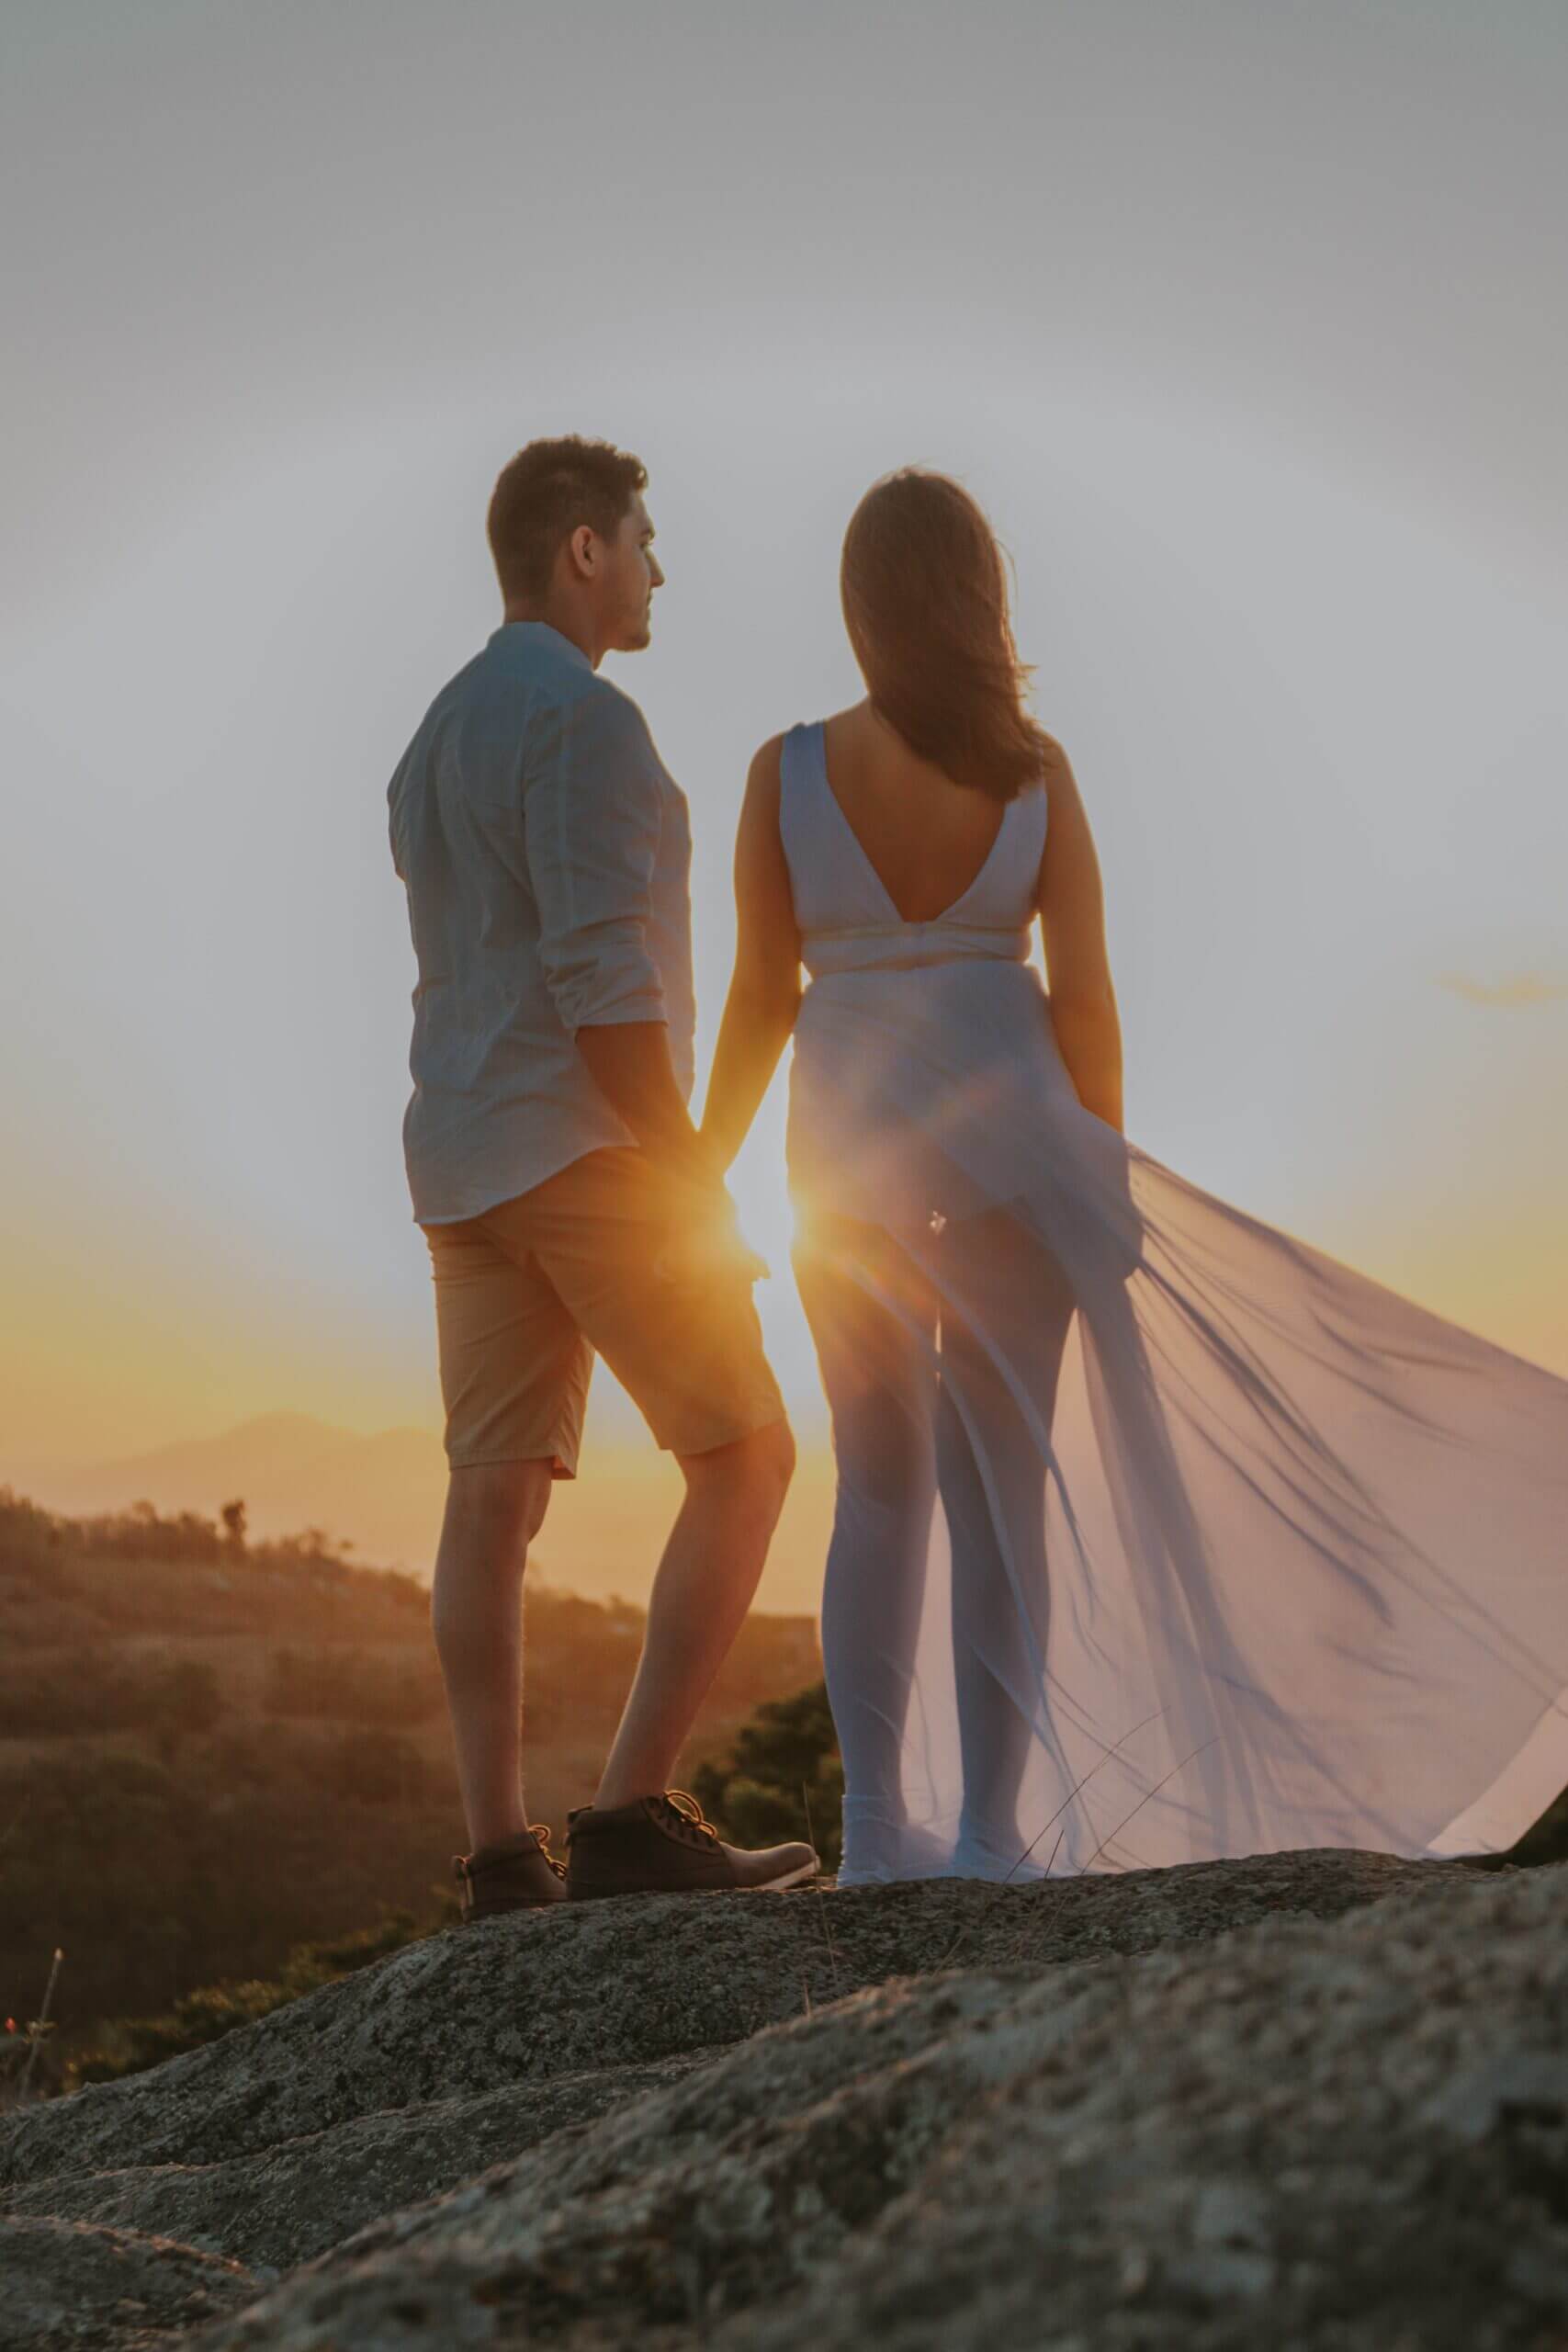 Auf diesem Bild sieht man einen Mann und eine Frau, die mit dem Rücken zur Kamera stehen. Sie stehen auf einem Hügel, halten Händchen und schauen Richtung Sonnenuntergang.